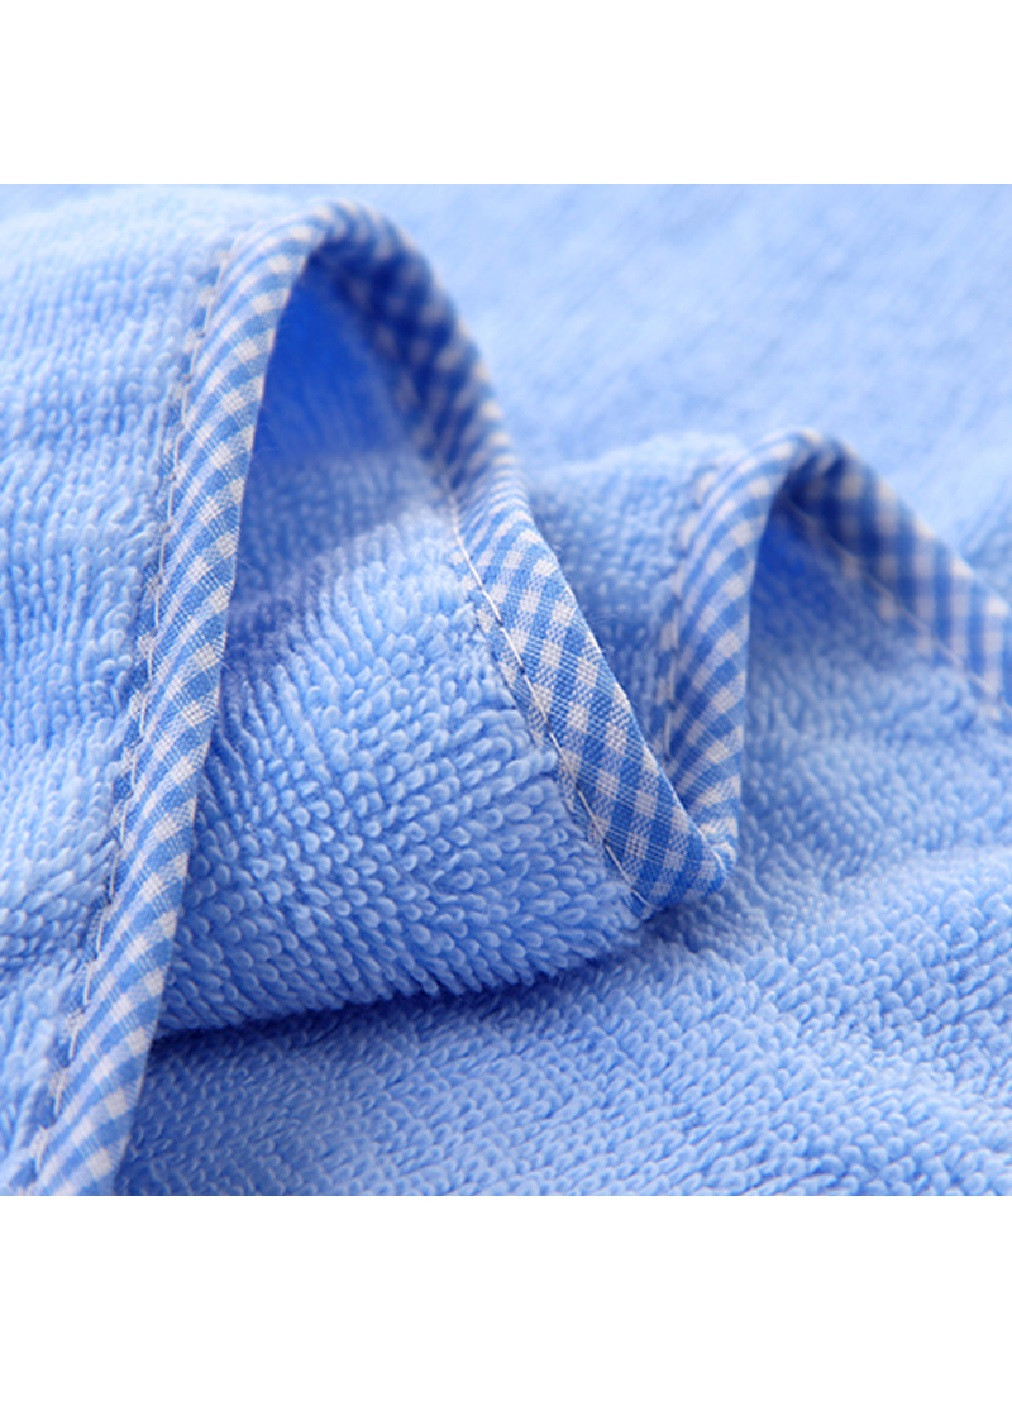 Unbranded полотенце с капюшоном детское банное плед уголок конверт для купания 90х90 см (473206-prob) голубое однотонный синий производство -